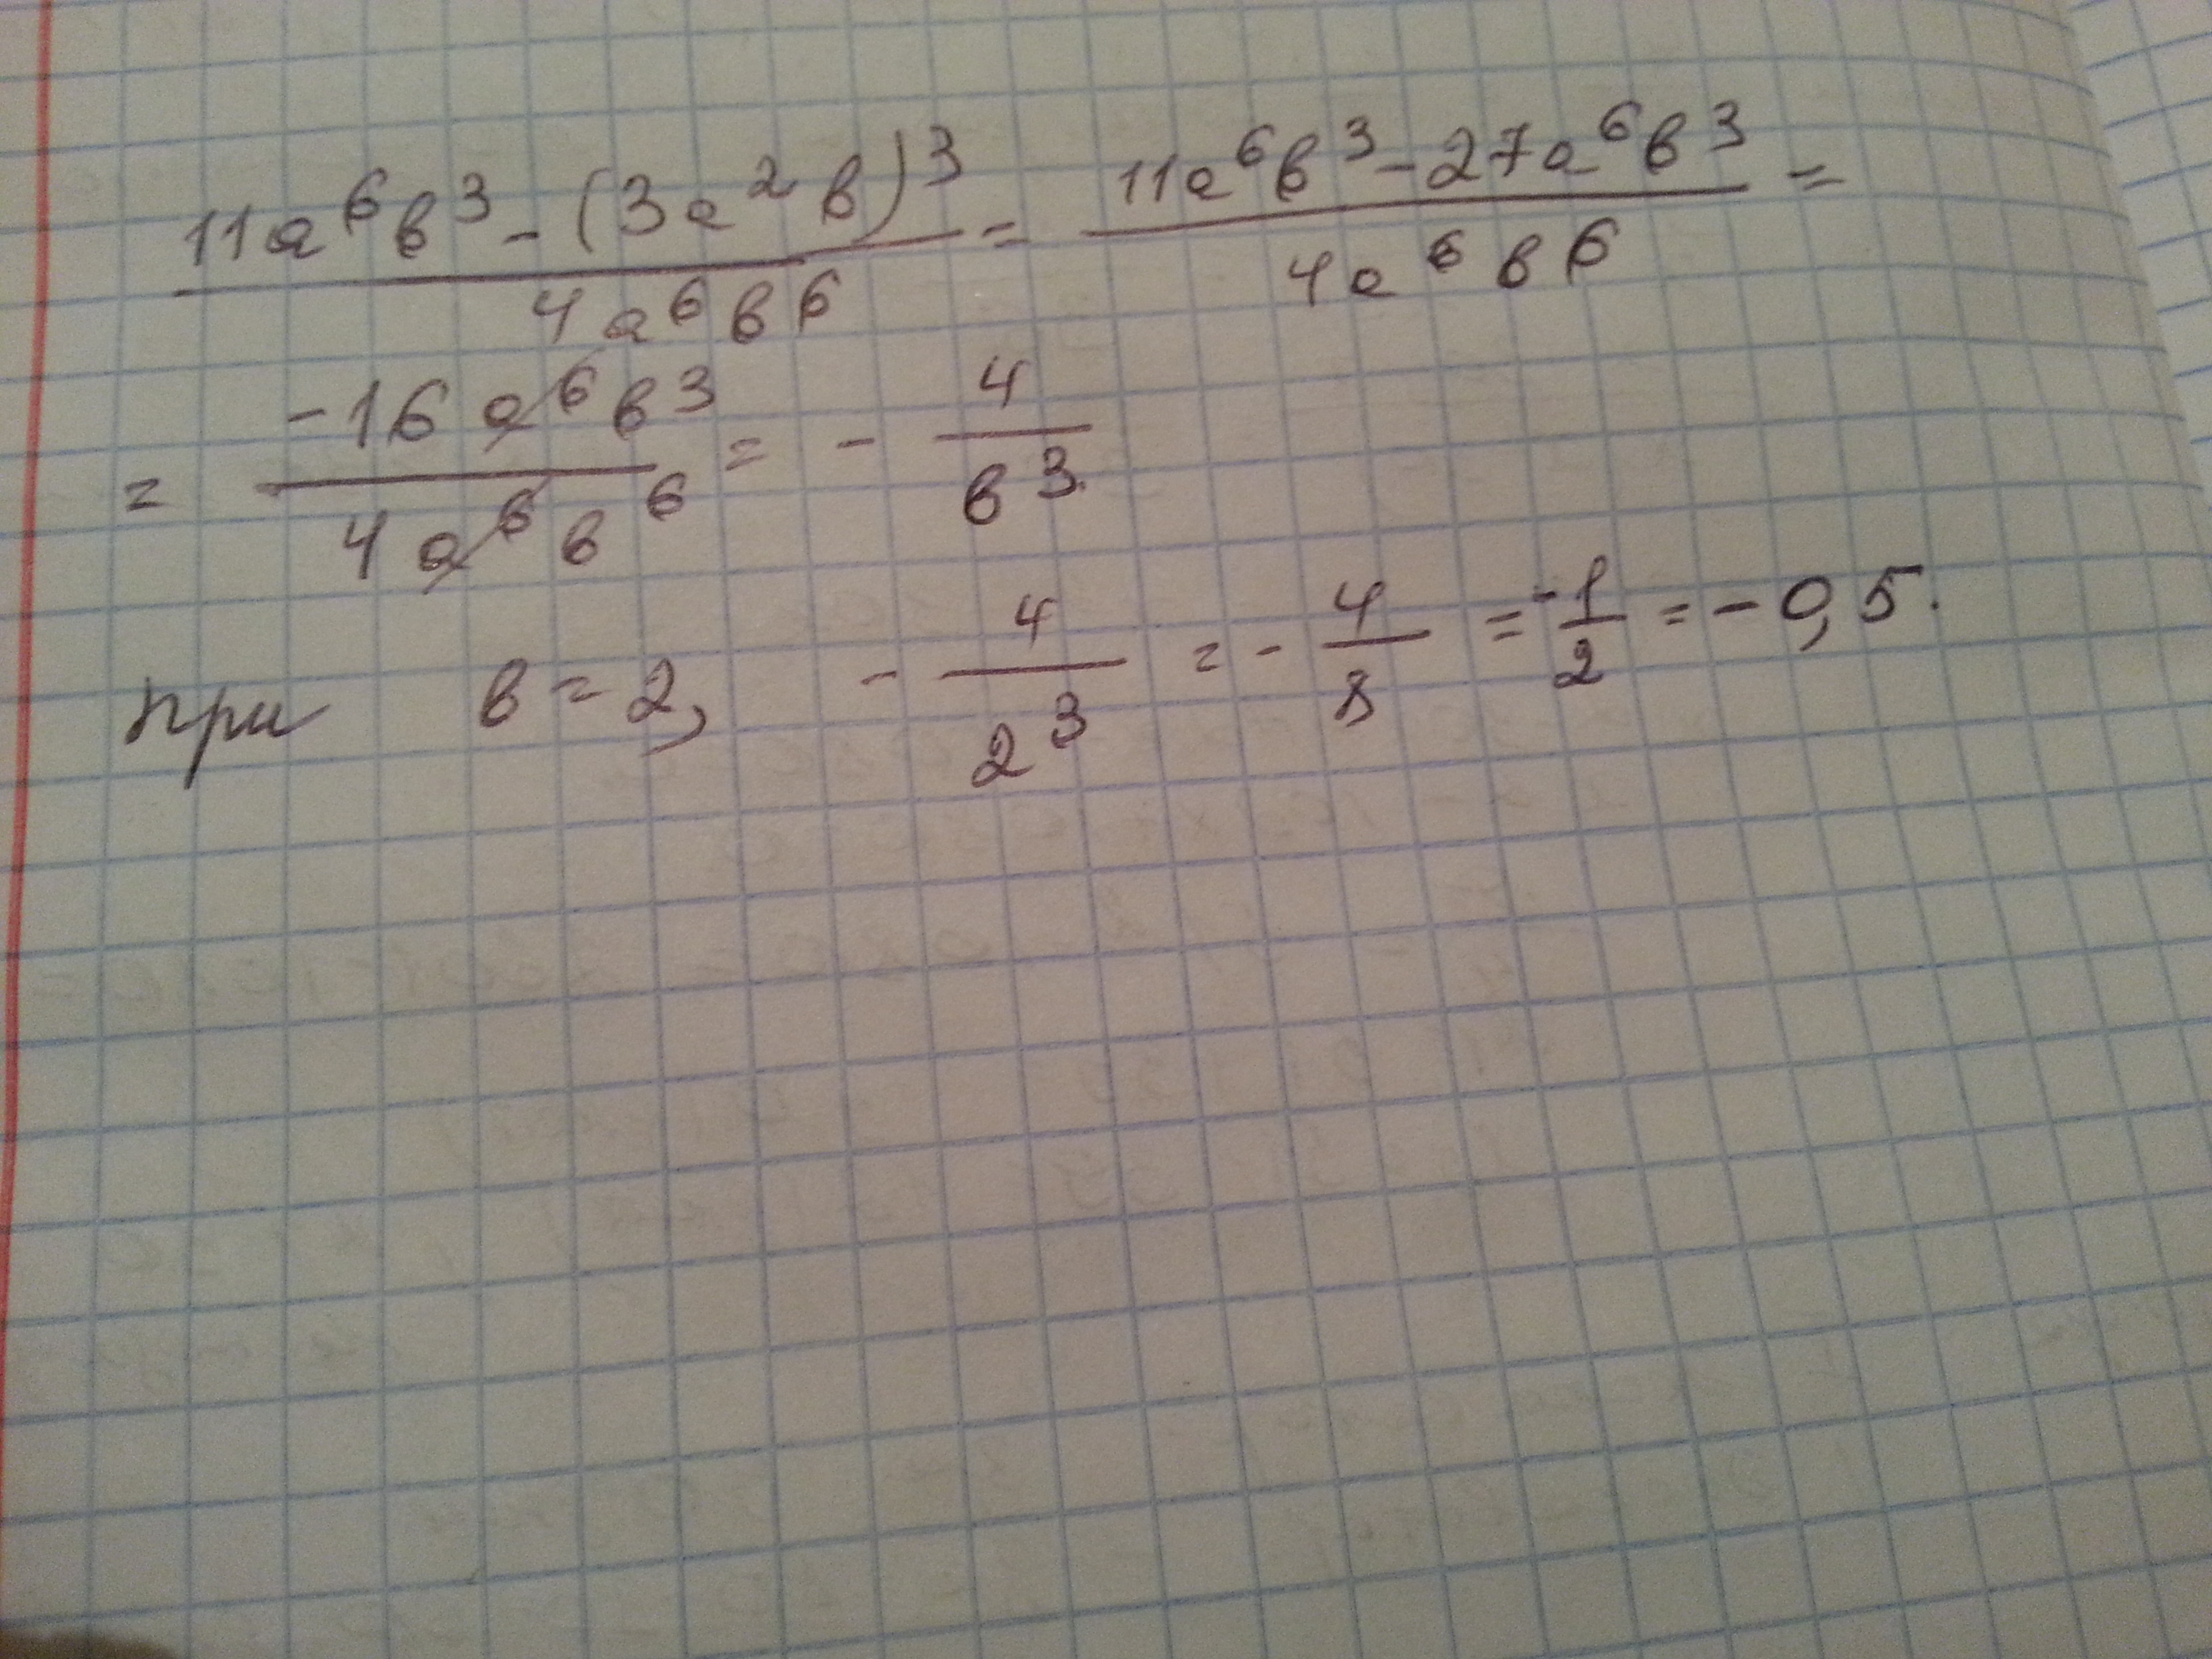 A b c при 6 4. 11a6b3 3a2b 3 4a6b6 при b 2. (3/(A - 3) + 4/(A ^ 2 - 5a + 6) + (2a)/(a - 2)) / ((3/(2a + 1)) ^ - 1) - (a - 12)/(3(3 - a)) решение. 6b3. 2(A-3)+B(3-A).